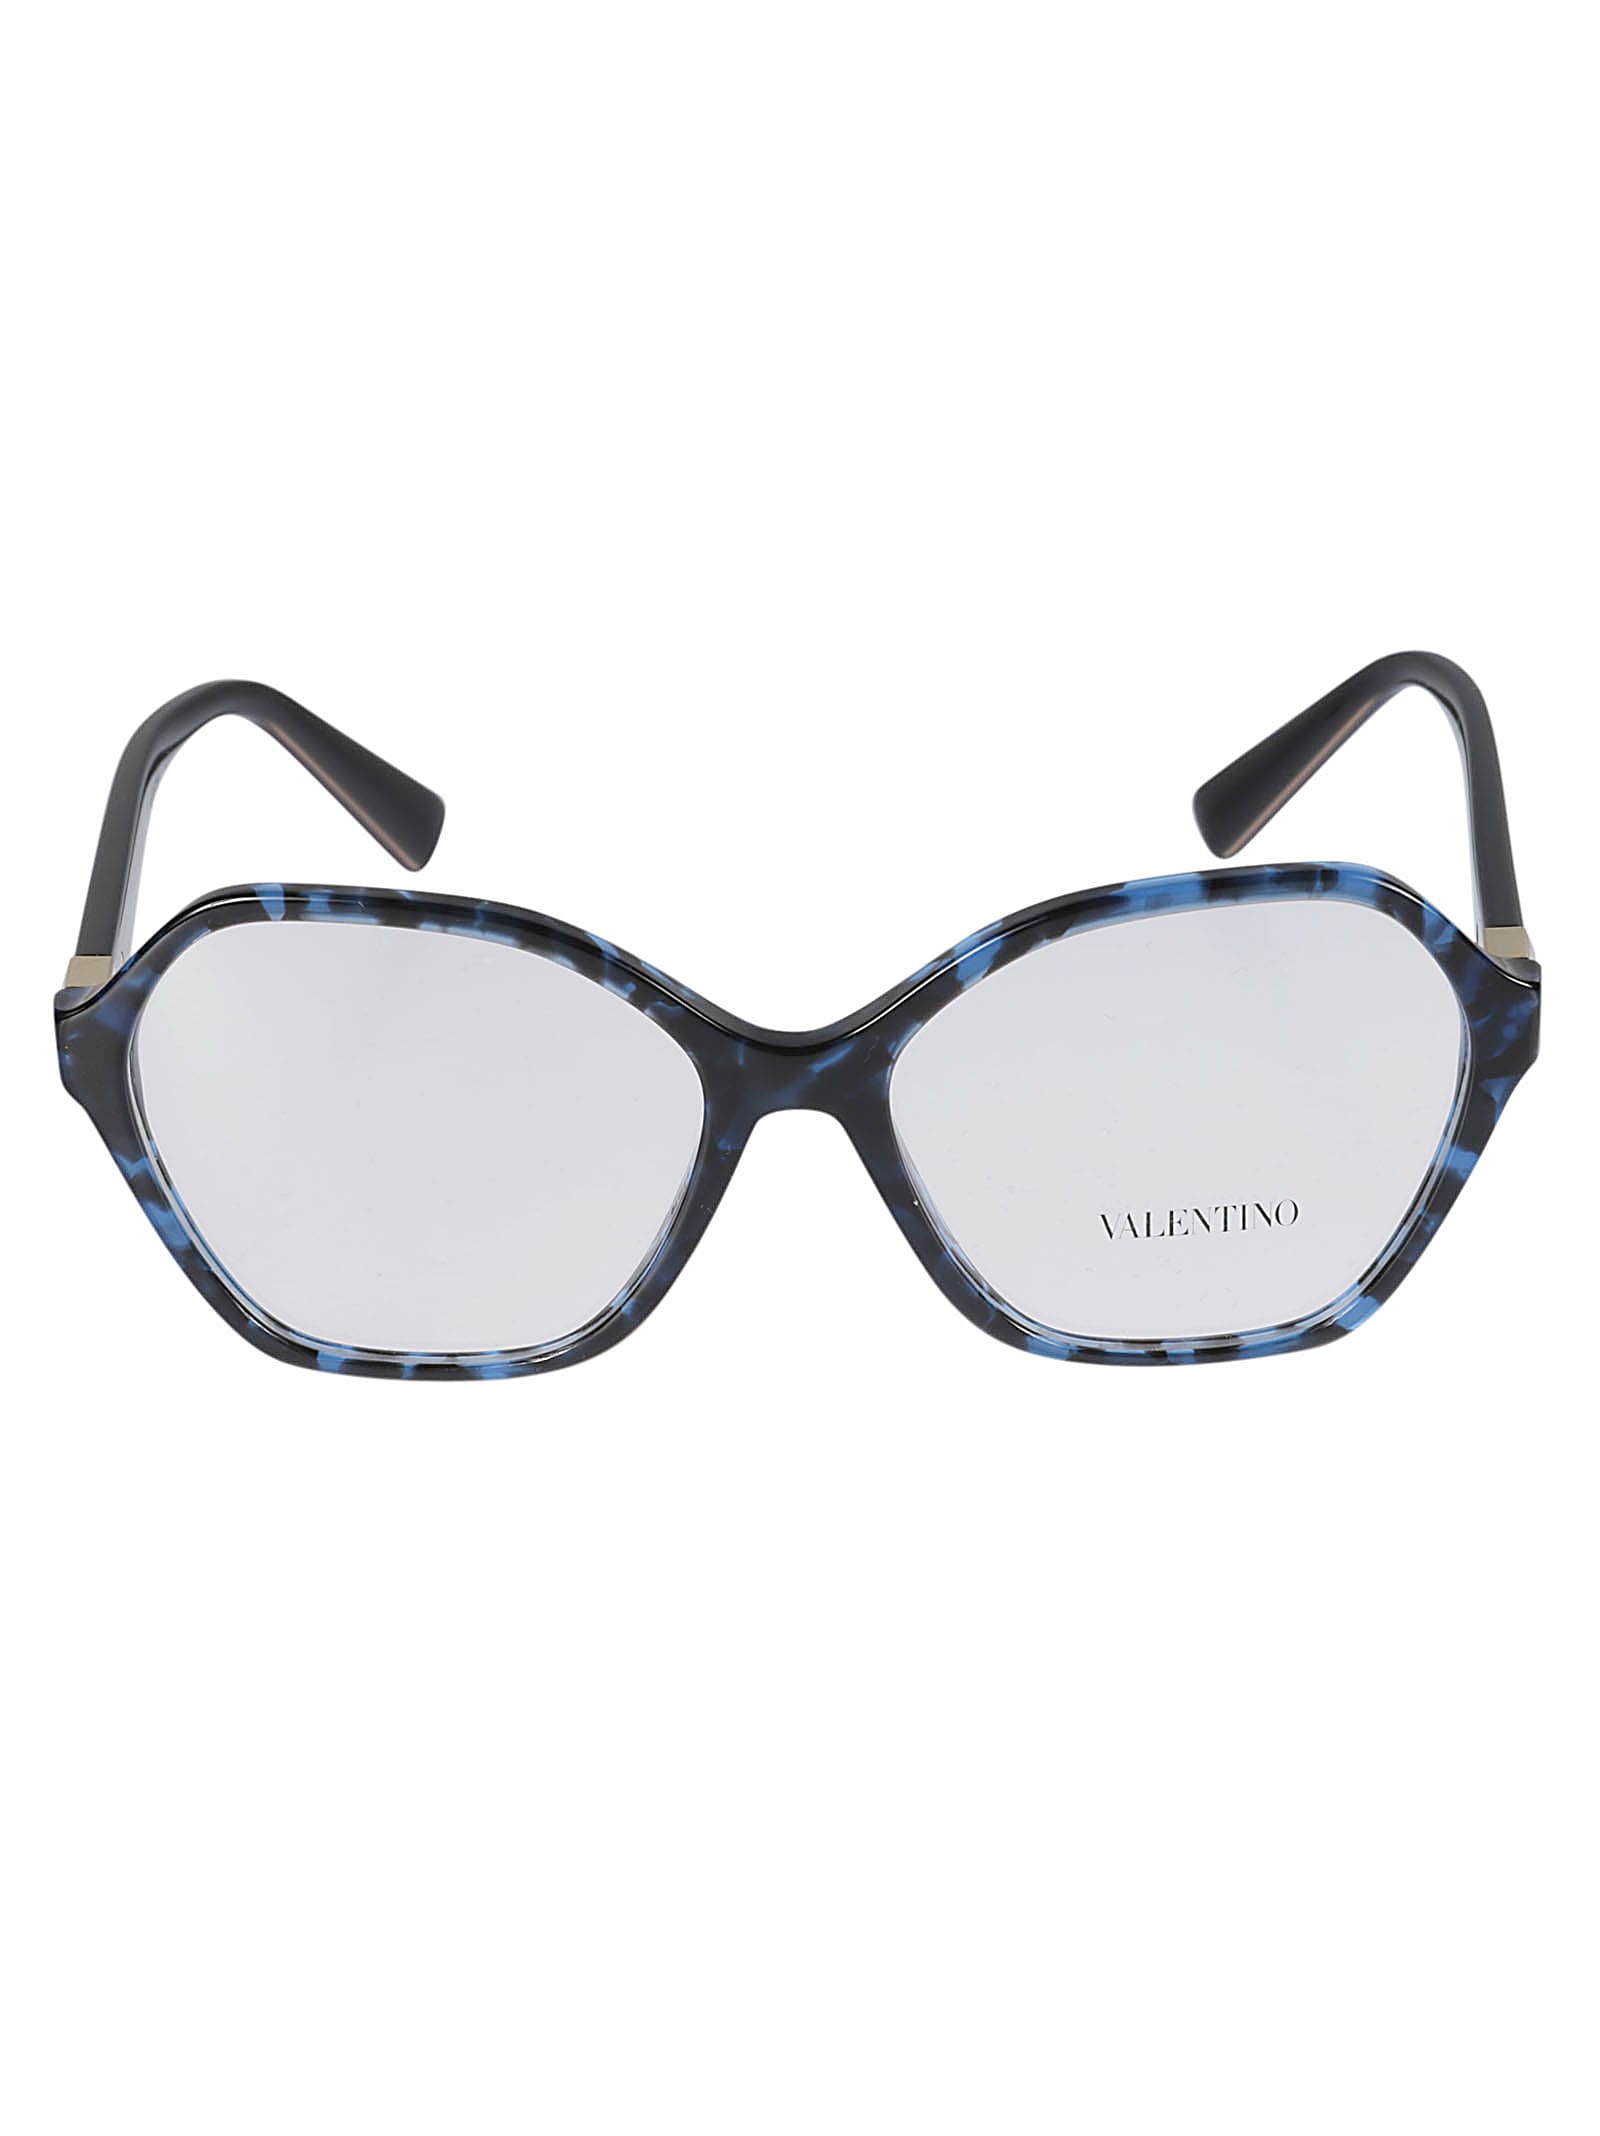 Valentino Vista5031 Glasses